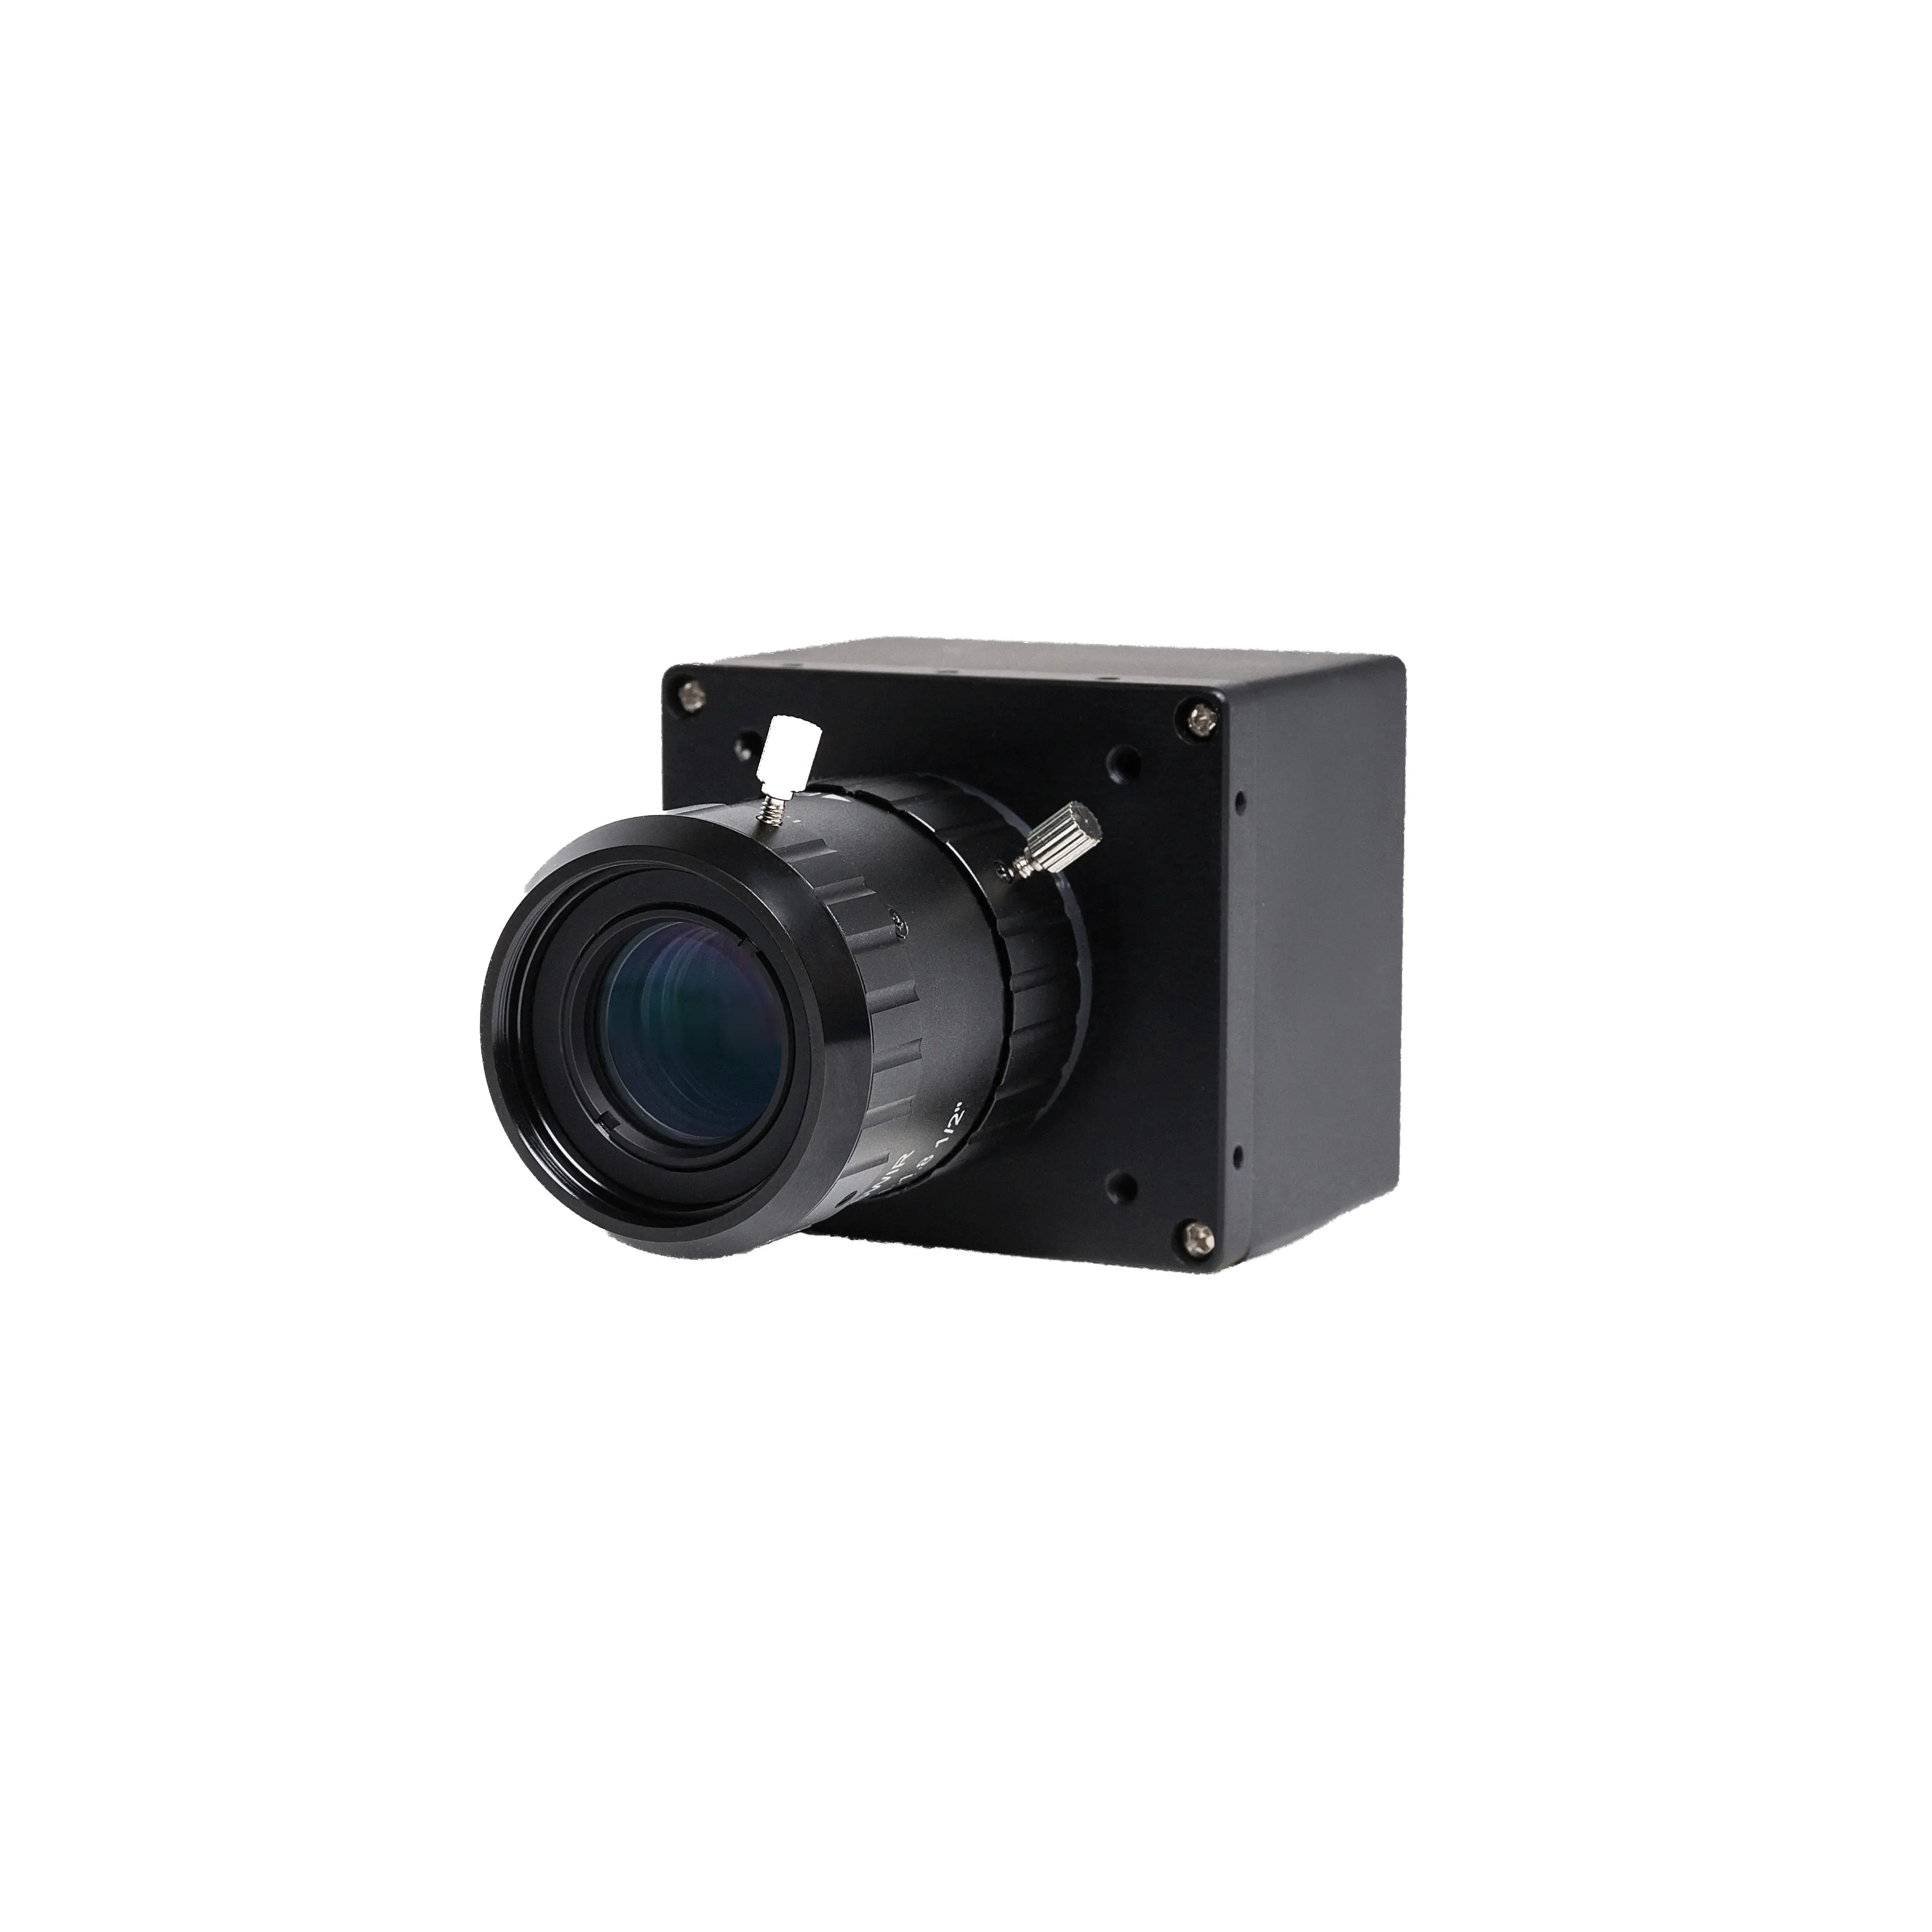 الرؤية معان 16 مللي متر عدسات ثابتة 640 قصيرة موجة الأشعة تحت الحمراء كاميرا شبكة مراقبة وحدات مع سوني IMX991 حساسية عالية الاستشعار